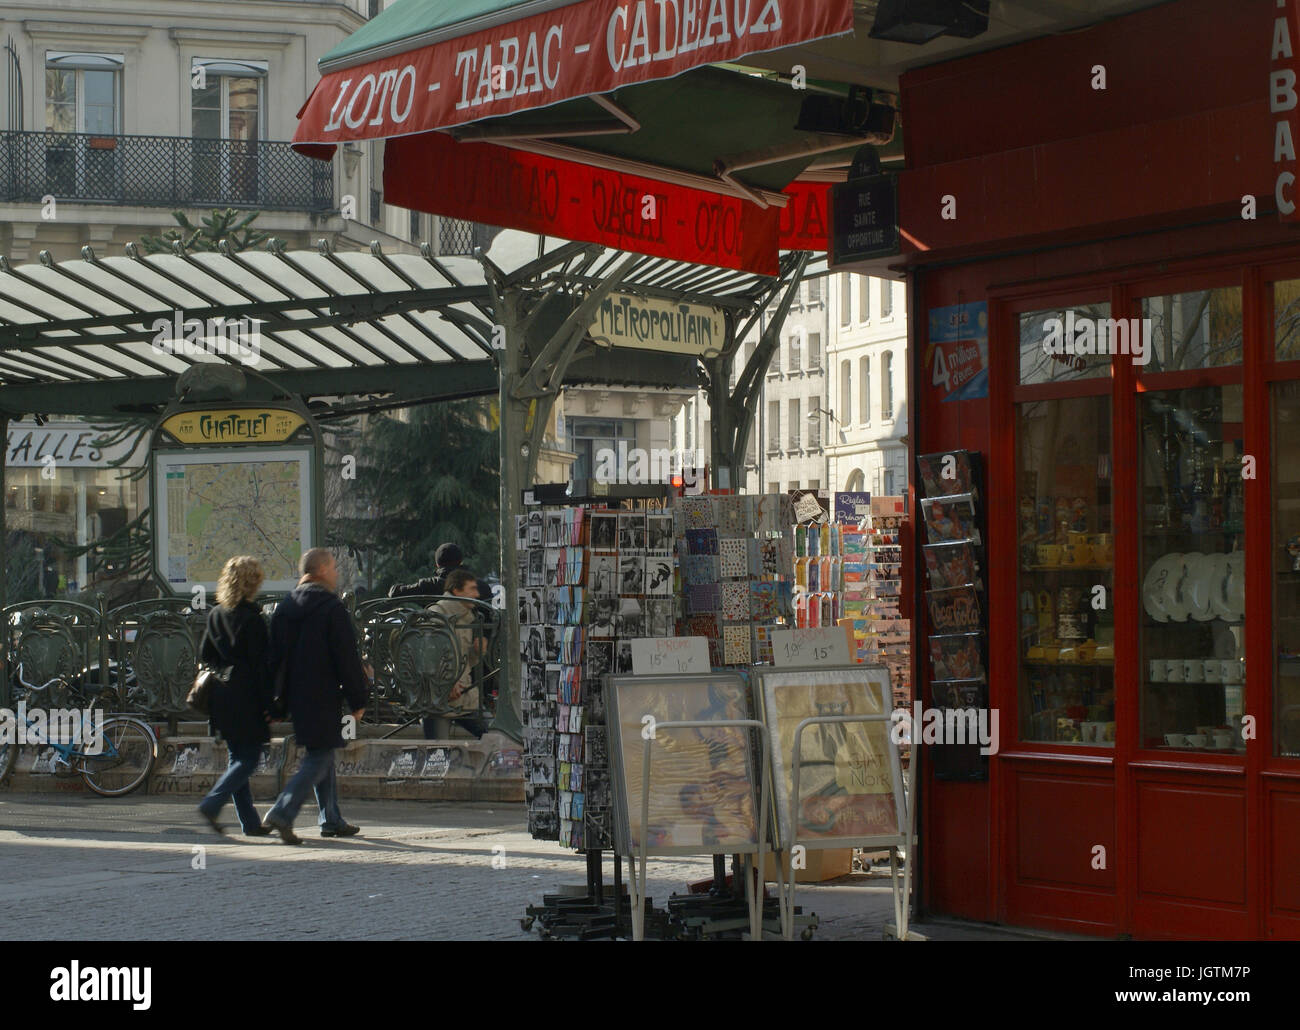 Métro Chatelet, 1° arrondissement, Ile-de-France, Paris, France Stock Photo